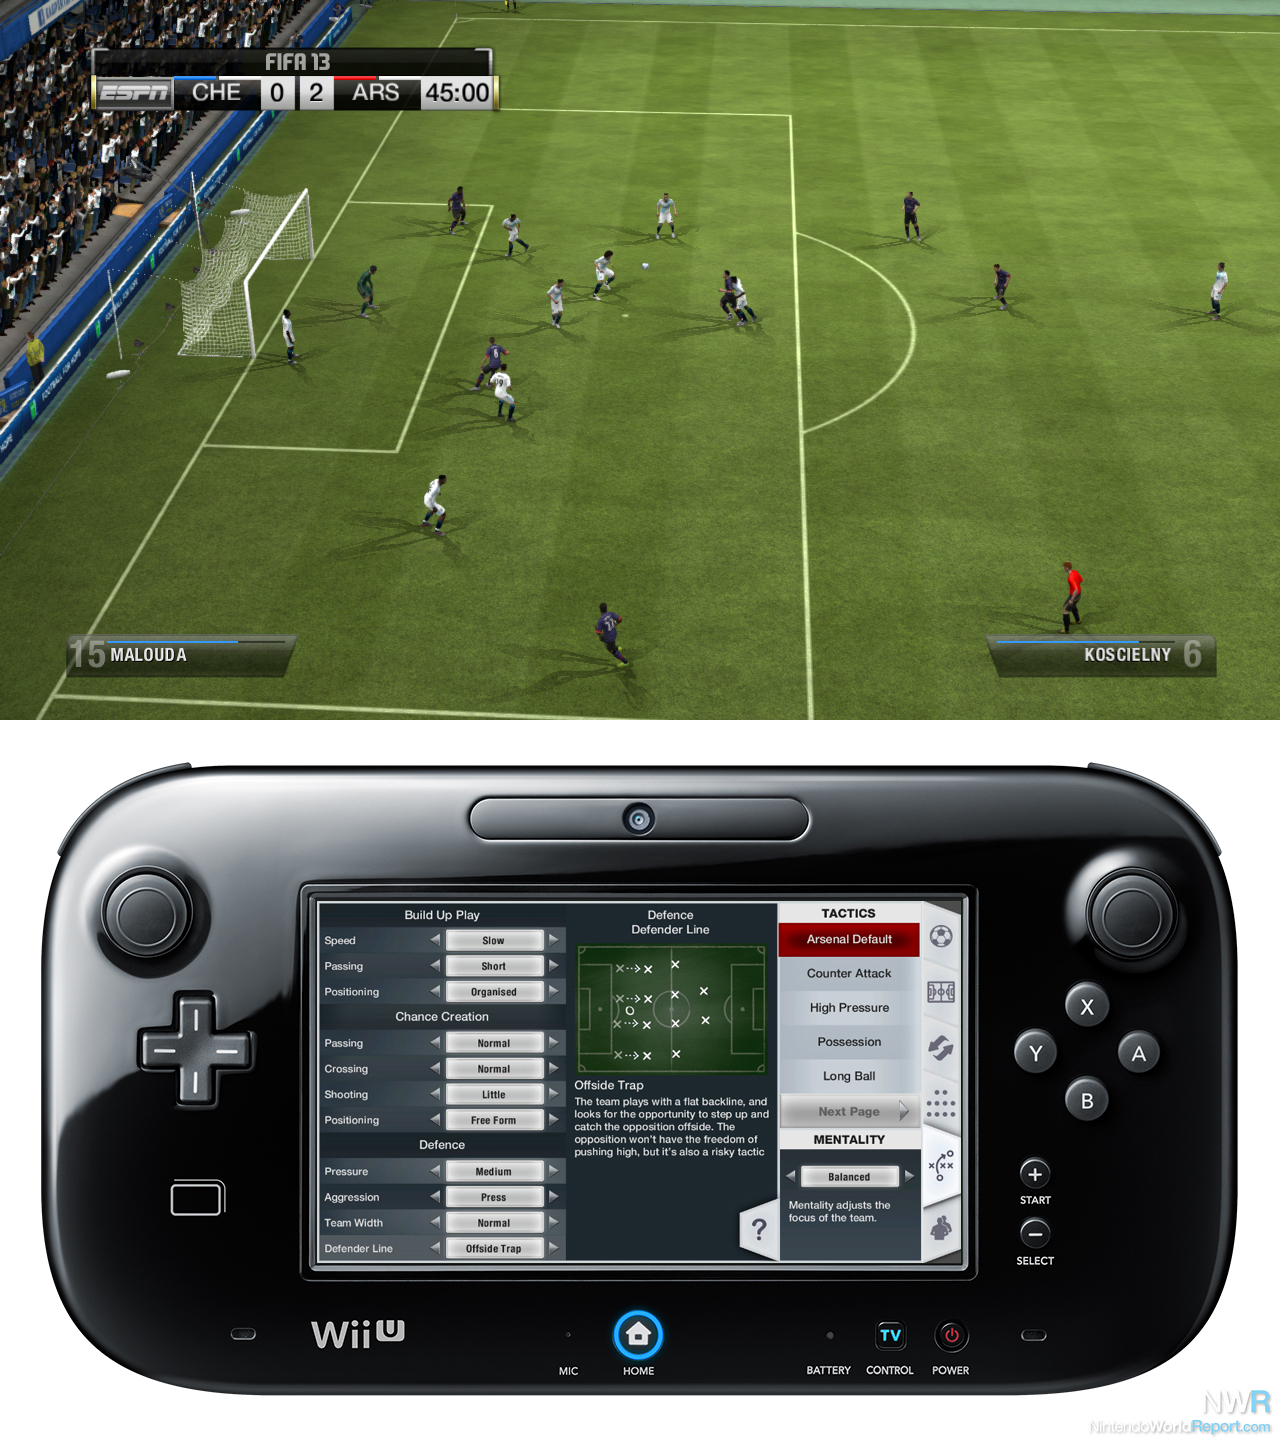 Is aan het huilen niveau praktijk FIFA 13 Hands-on Preview - Hands-on Preview - Nintendo World Report